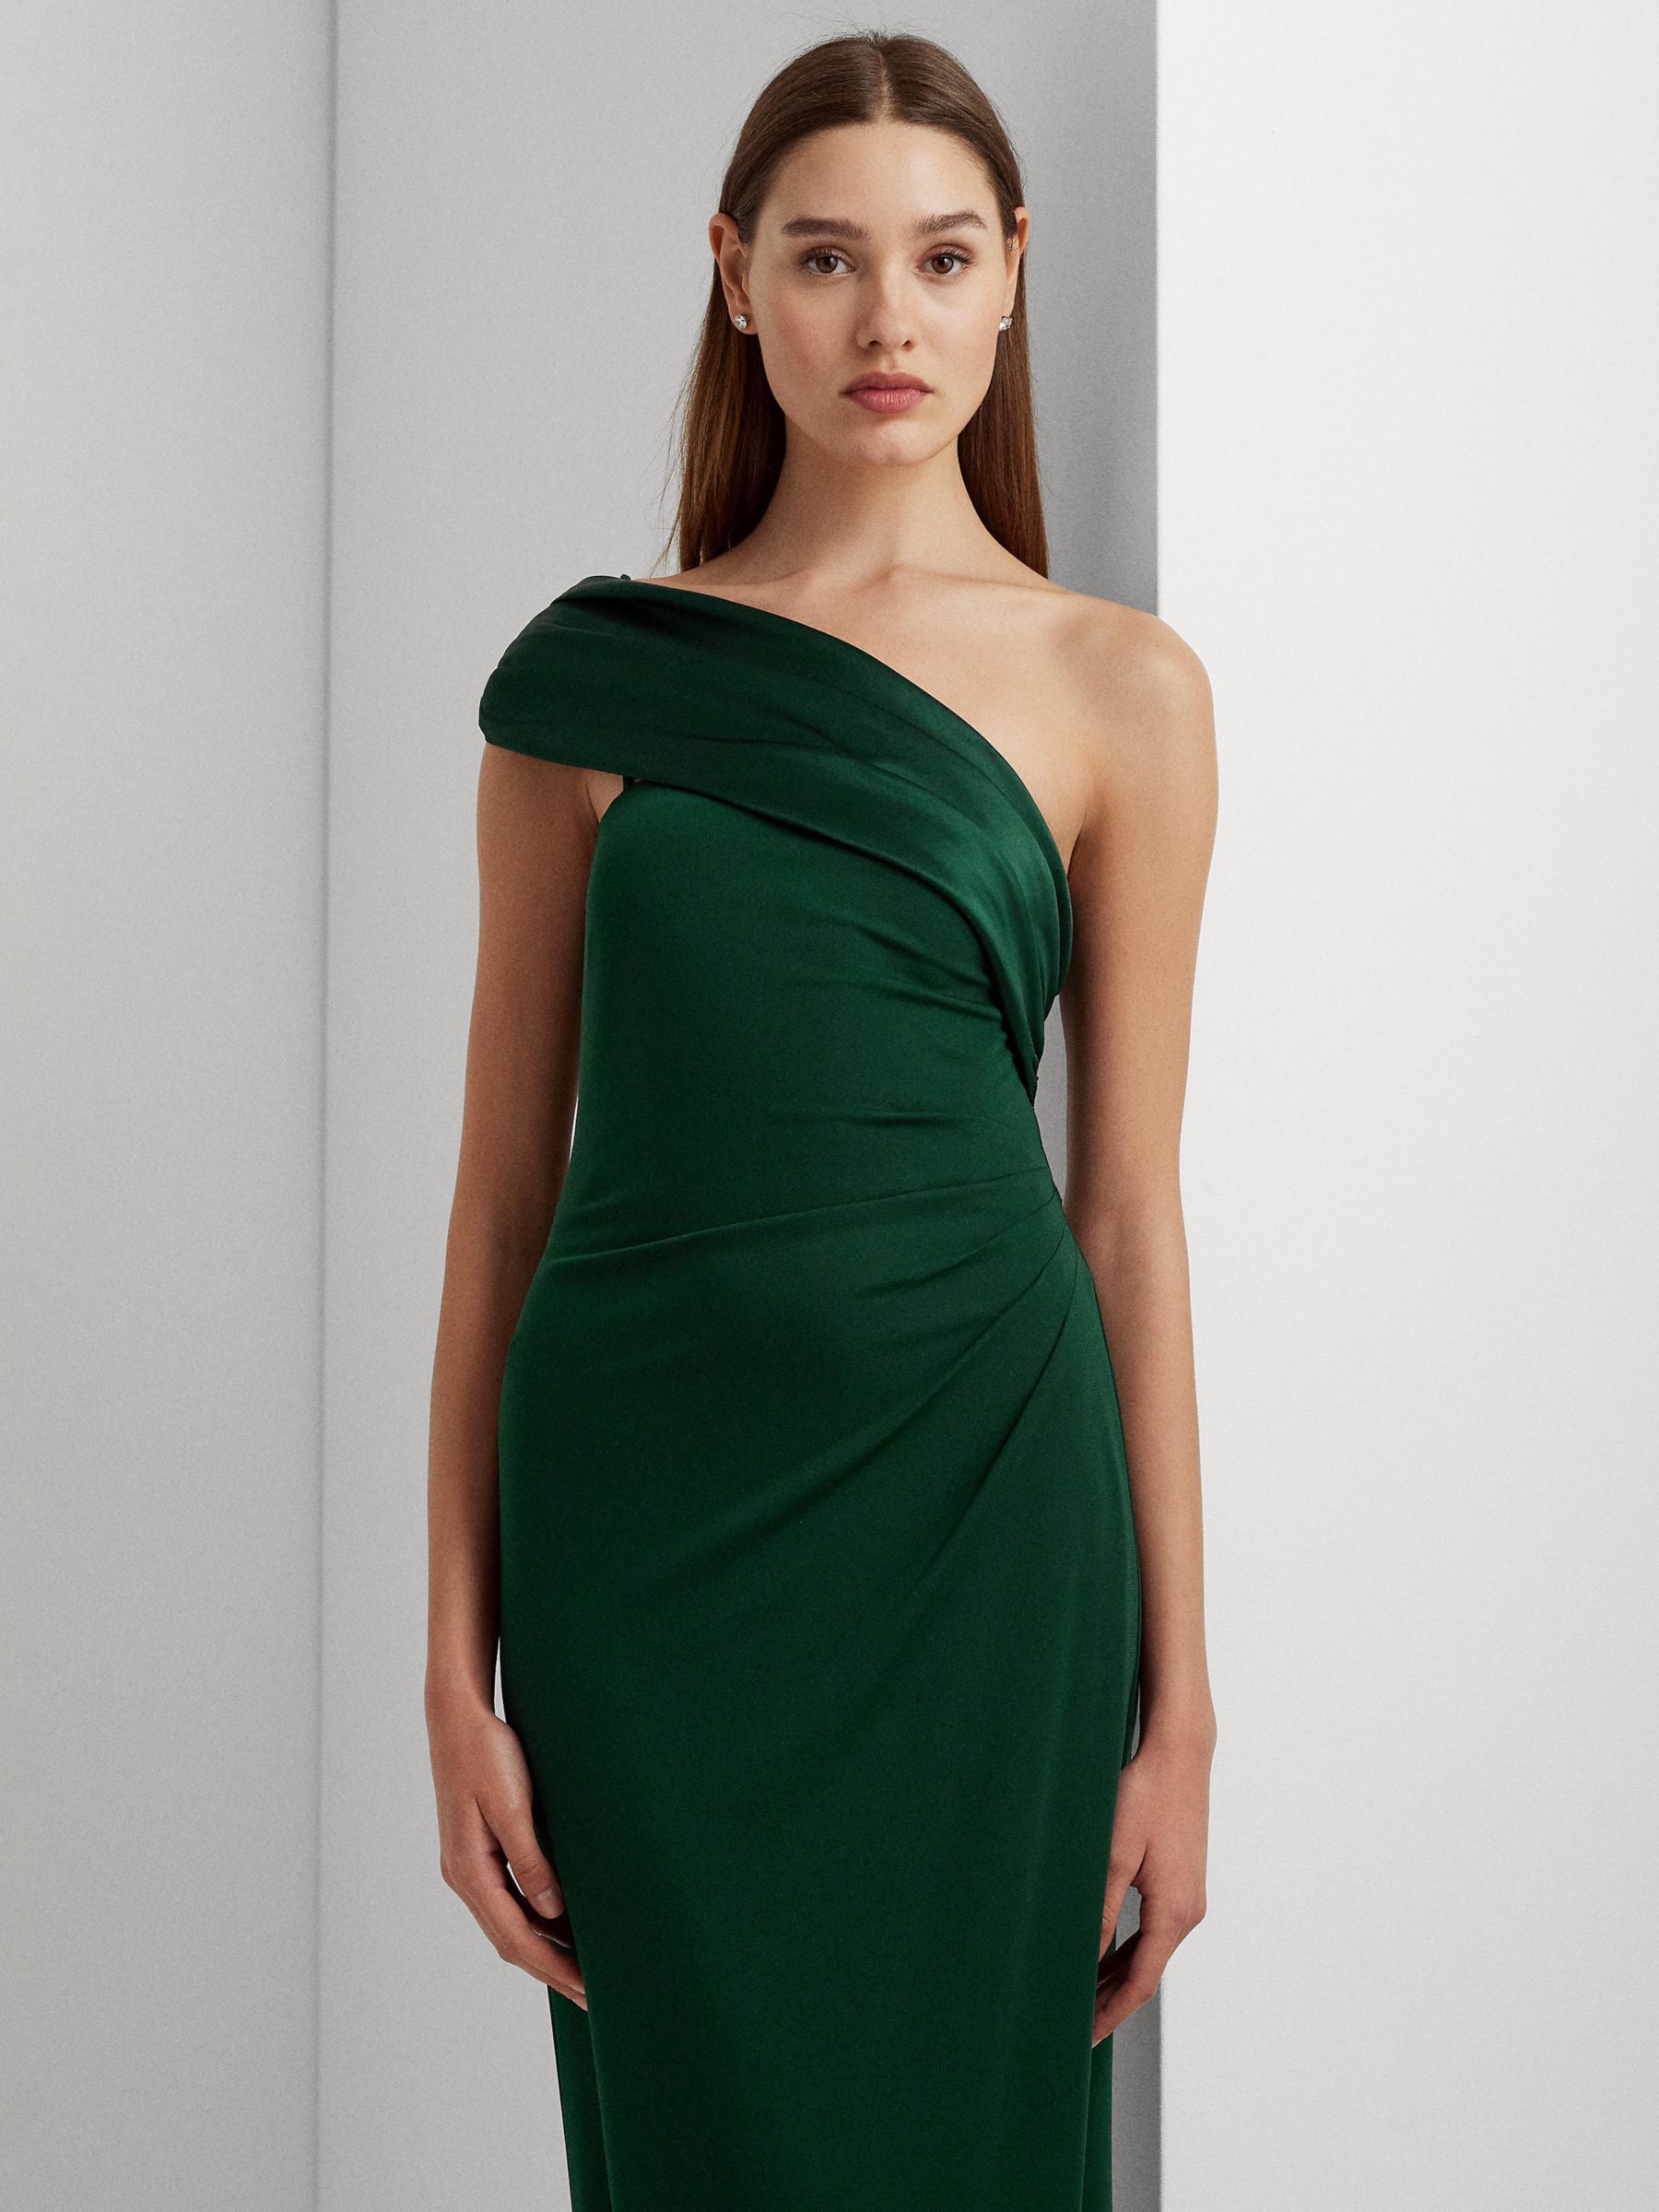 Lauren Ralph Lauren Rathanne Maxi Dress, Green